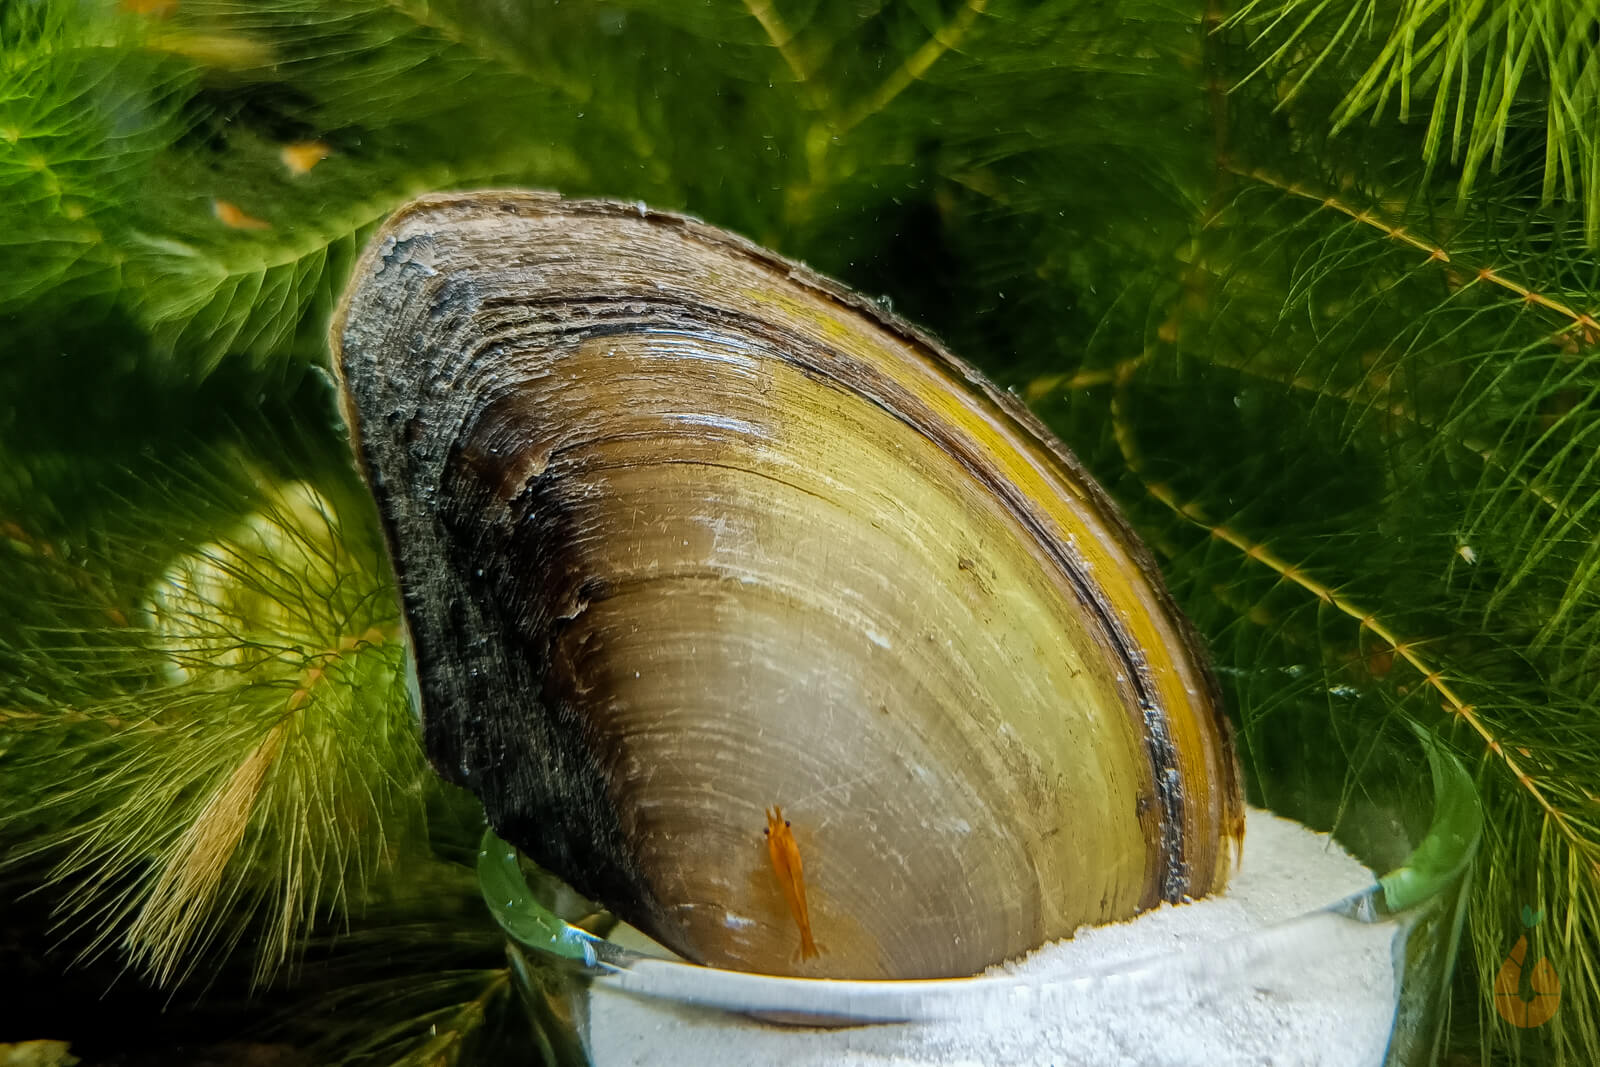 Tropische Süßwassermuschel | Aquarium Muschel | Pilsbryoconcha exilis